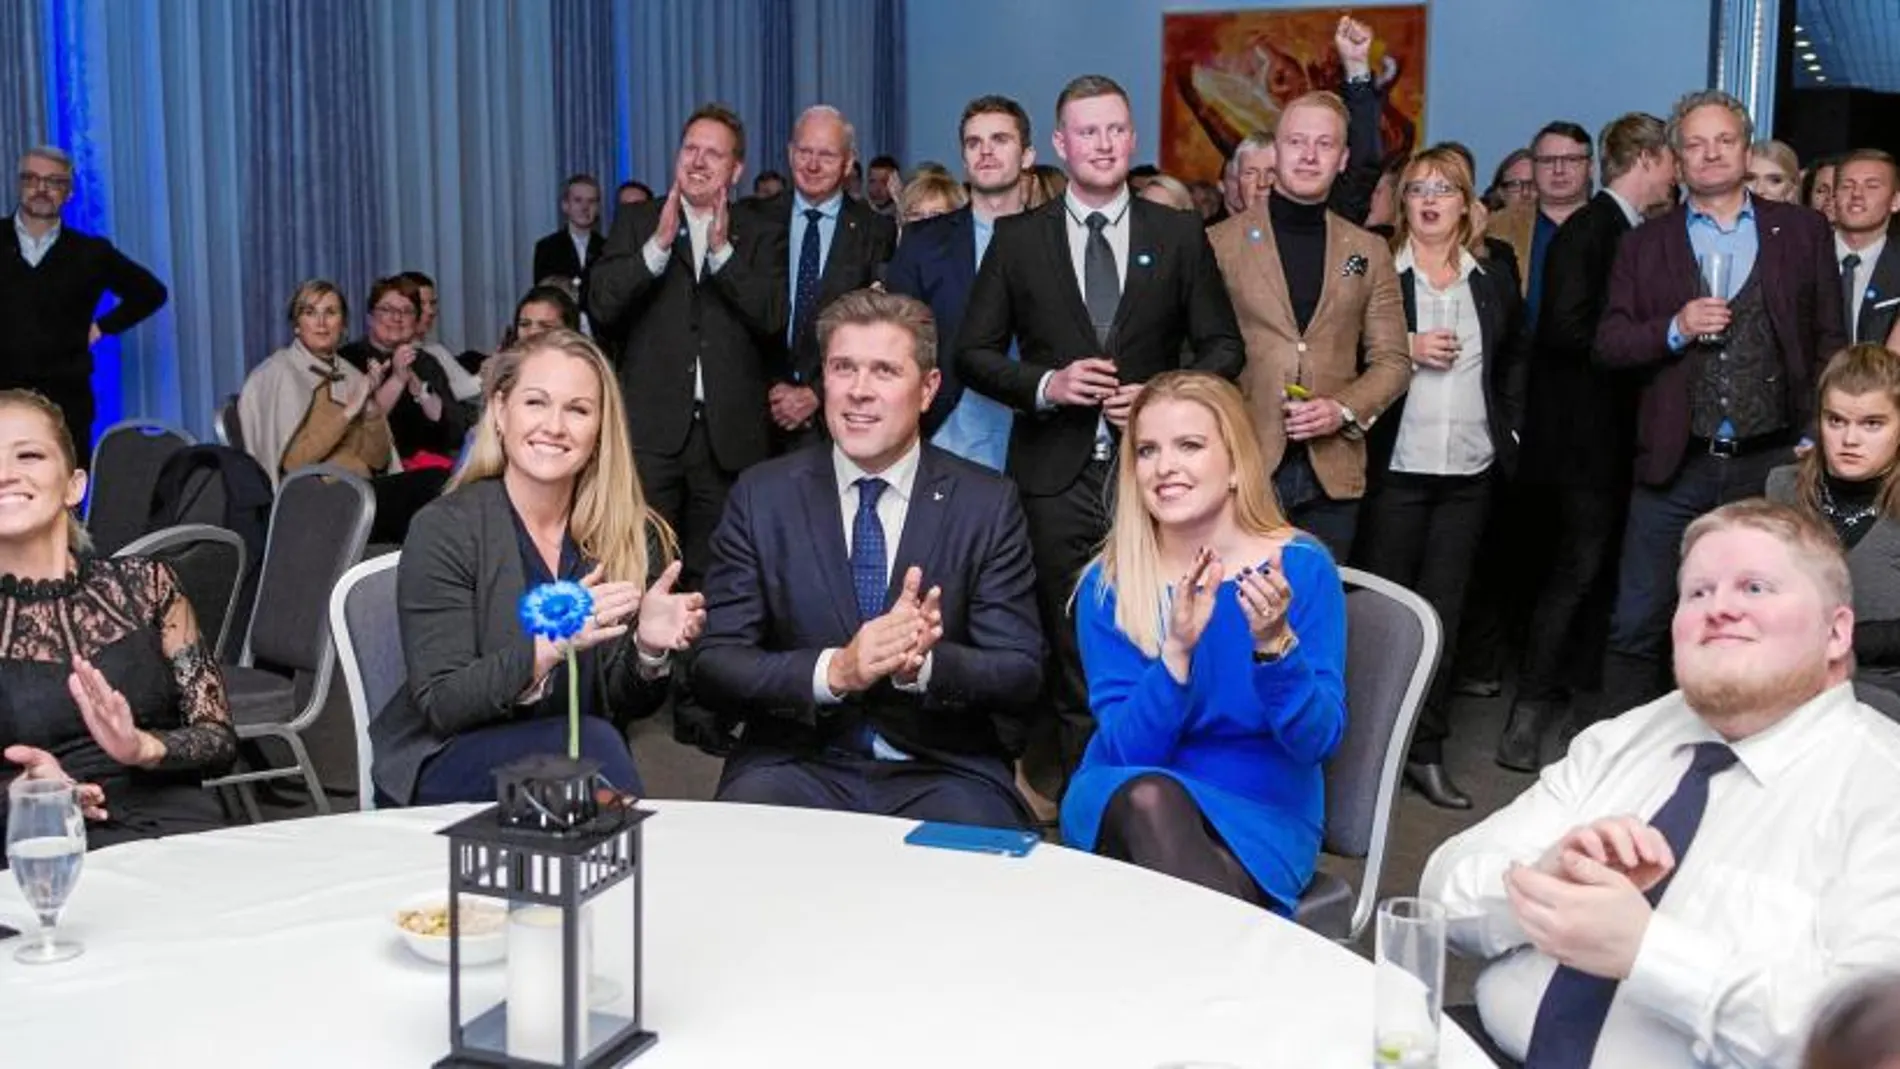 El primer ministro islandés, Bjarni Benediktsson, celebra con sus compañeros de partido las victoria conservadora en las elecciones del sábado